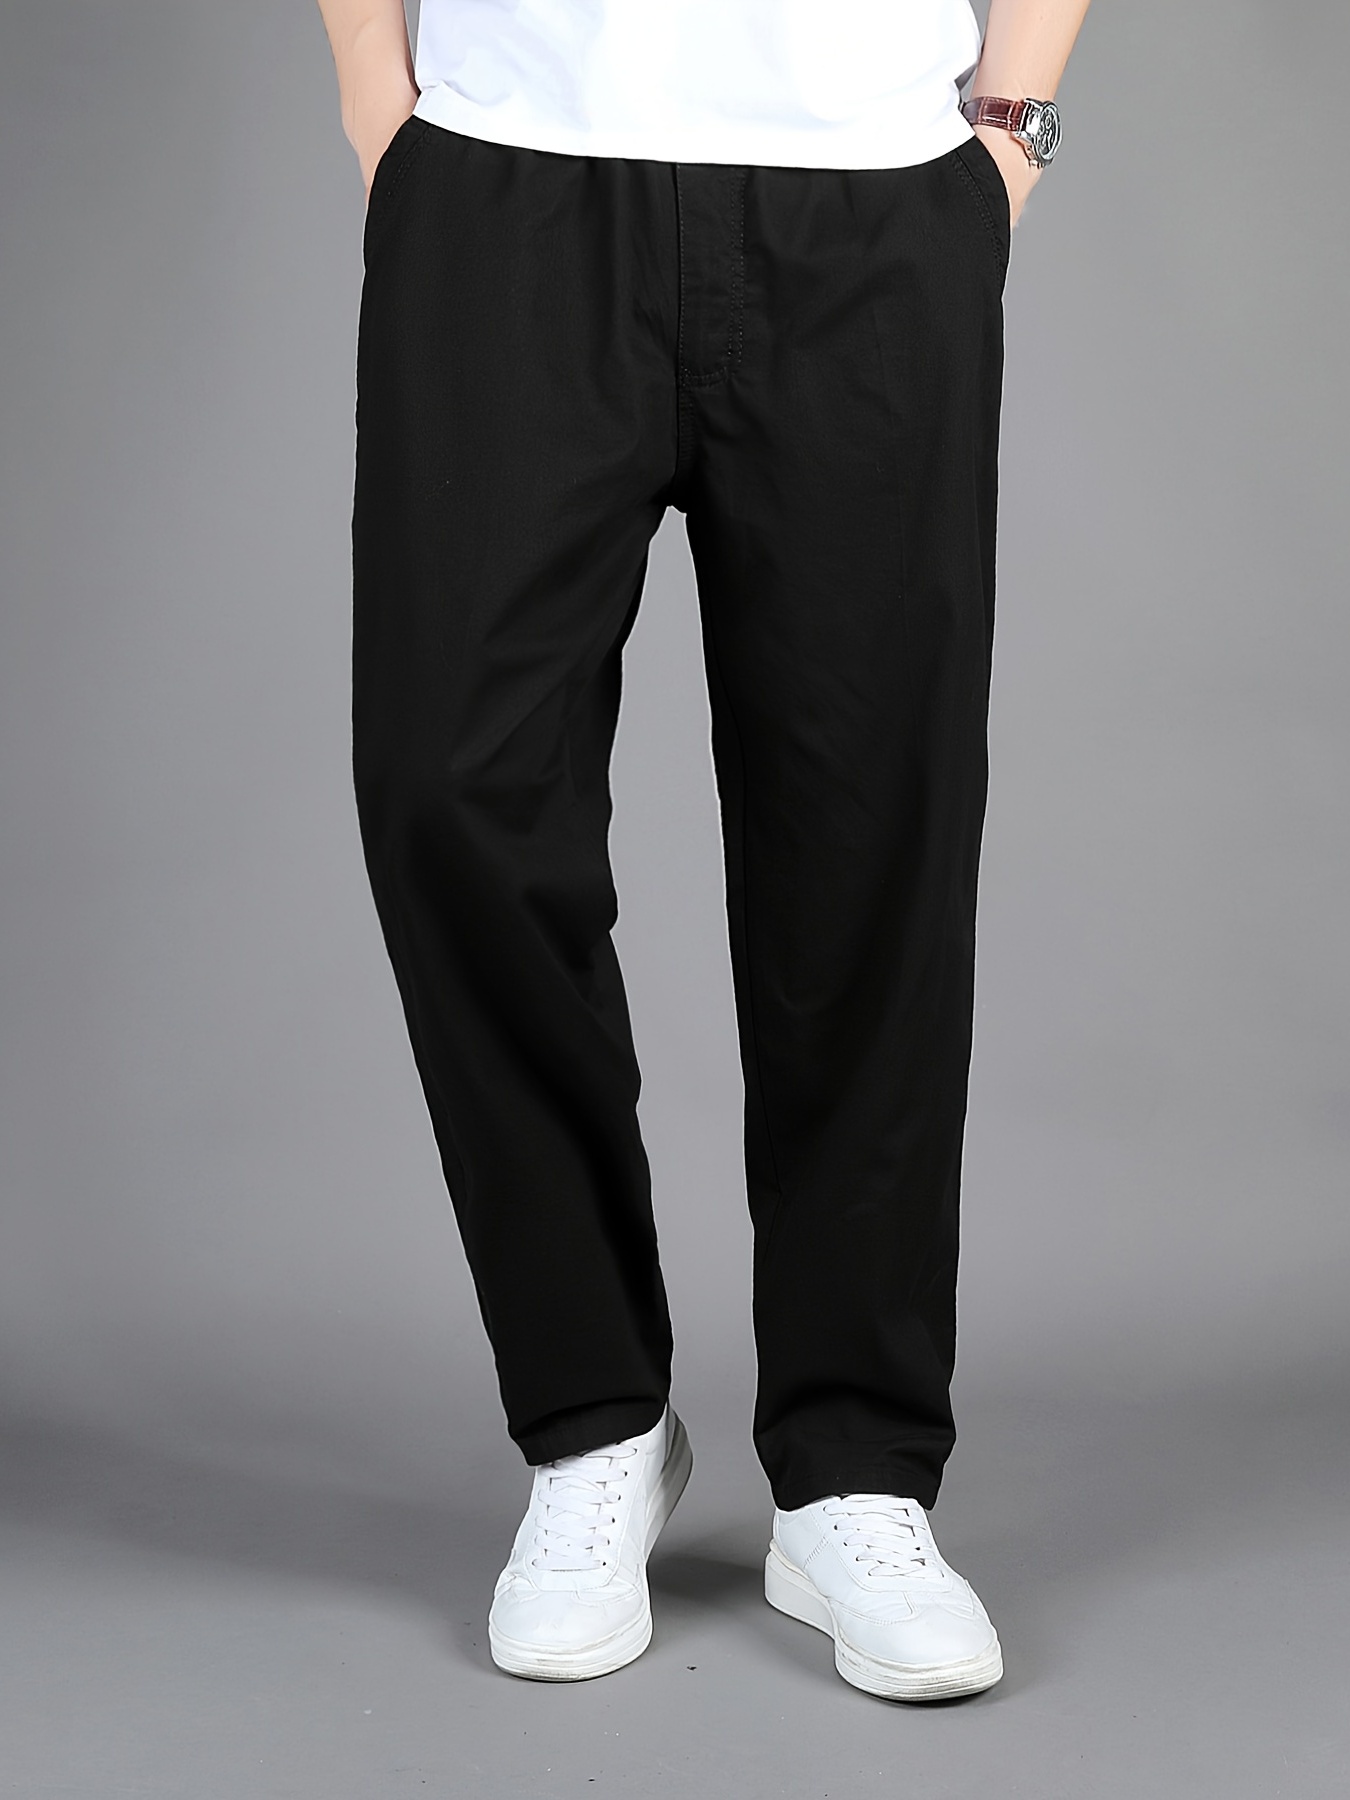 Black Pants For Men Casual - Temu Canada